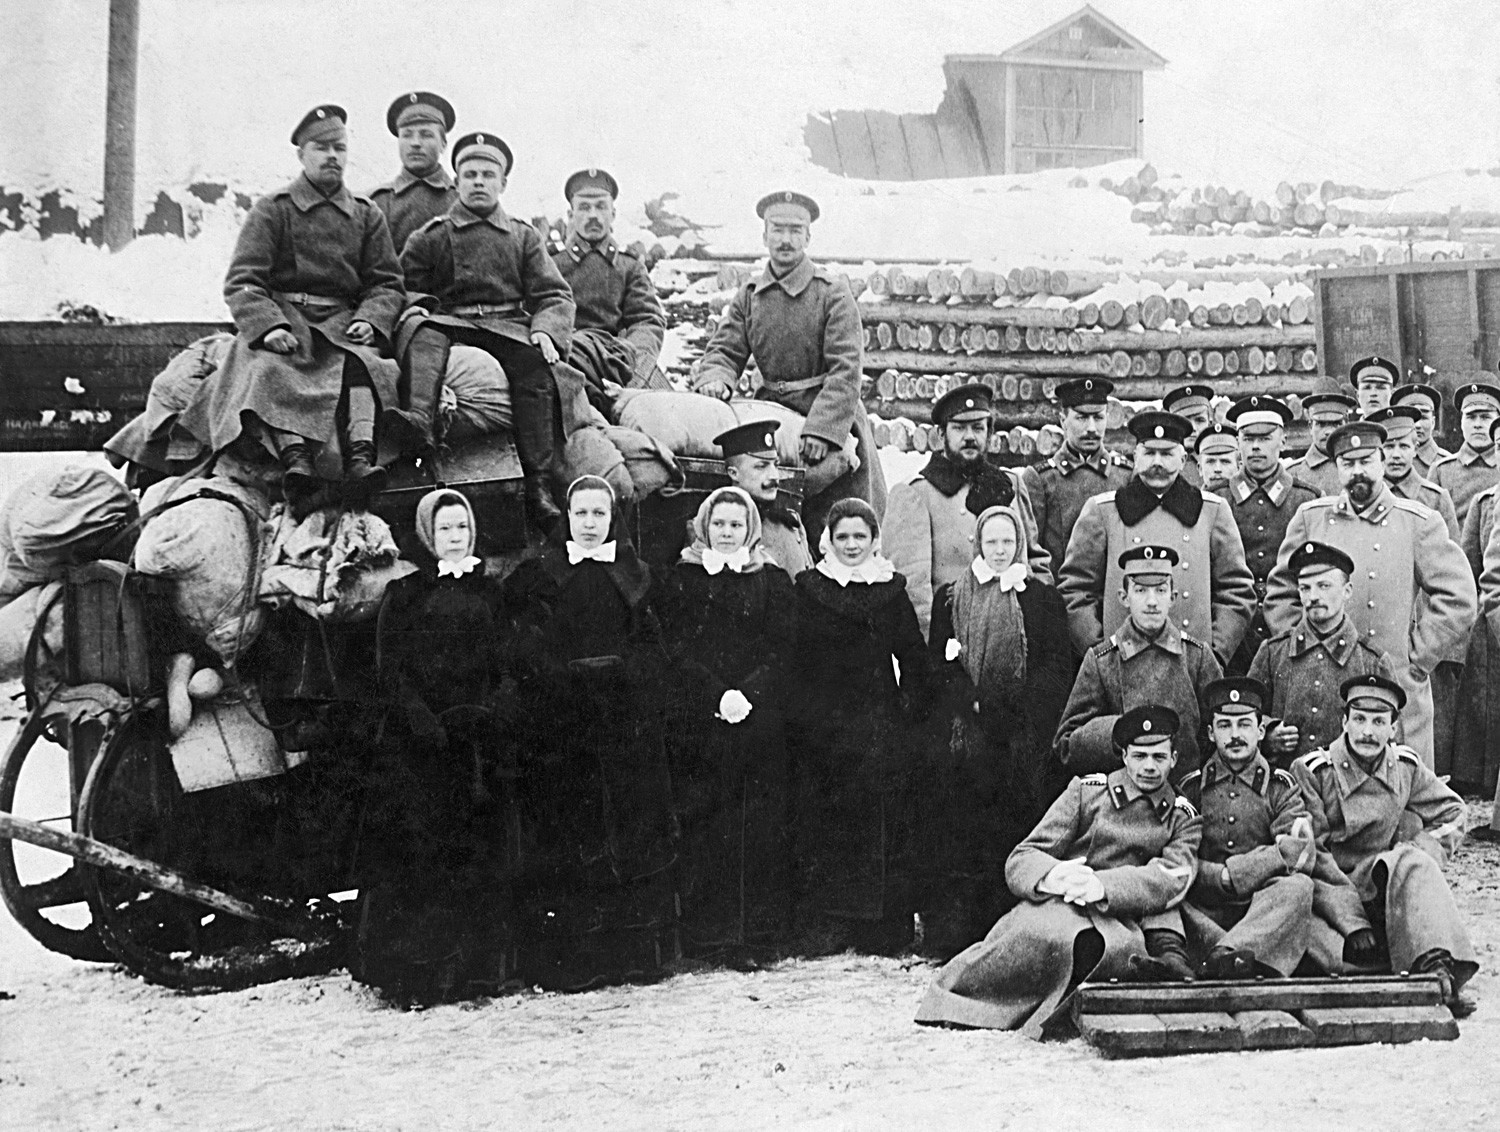 Des membres de la Croix-Rouge russe durant la Grande Guerre, 1915